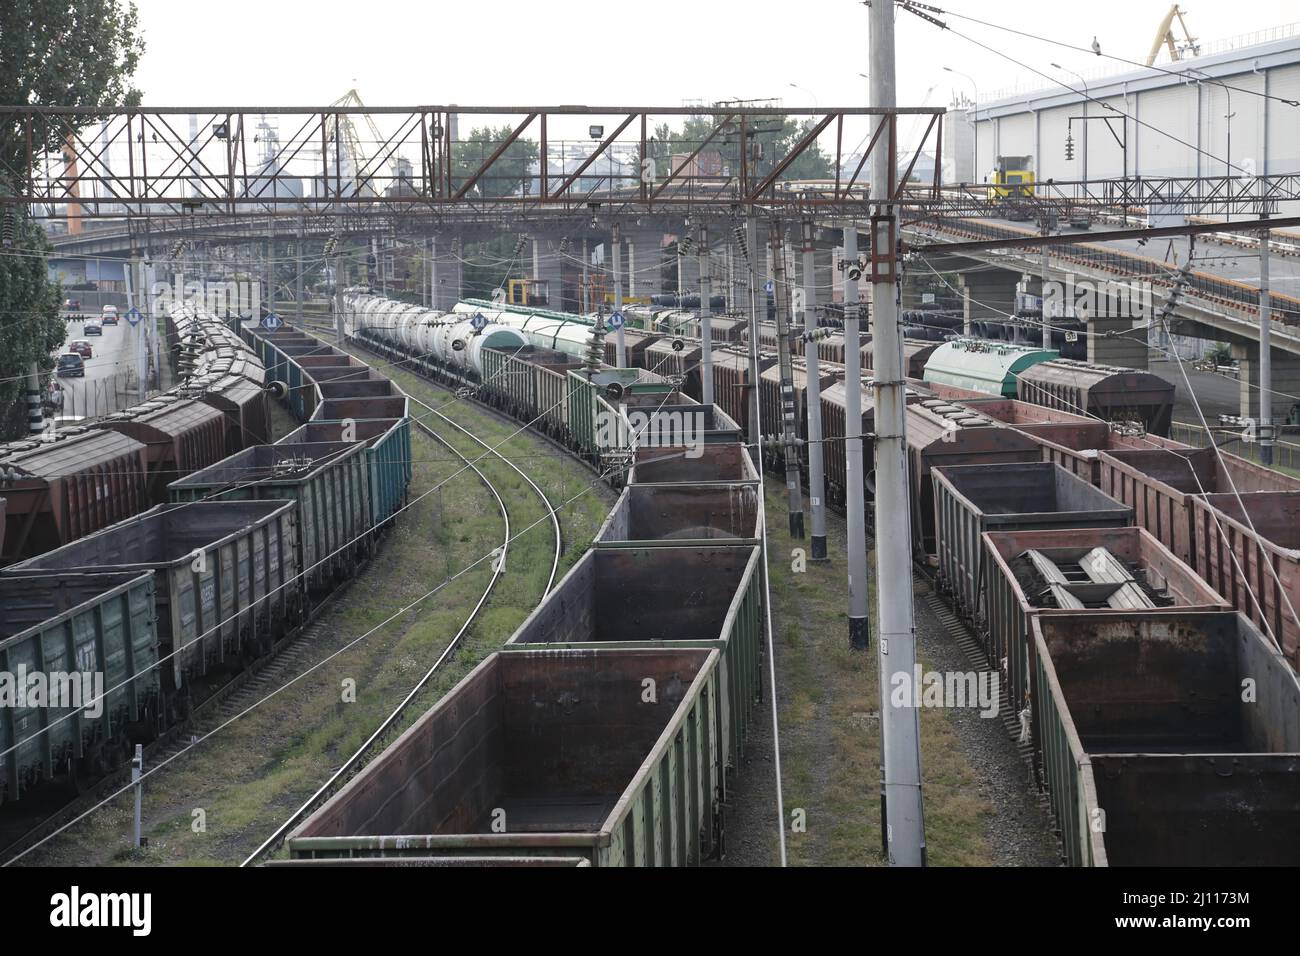 Vue sur les rangées de wagons de fret sur le chantier de shunting dans la zone portuaire d'Odessa, Ukraine. Les trains semblent être interminables jusqu'à l'horizon. Banque D'Images